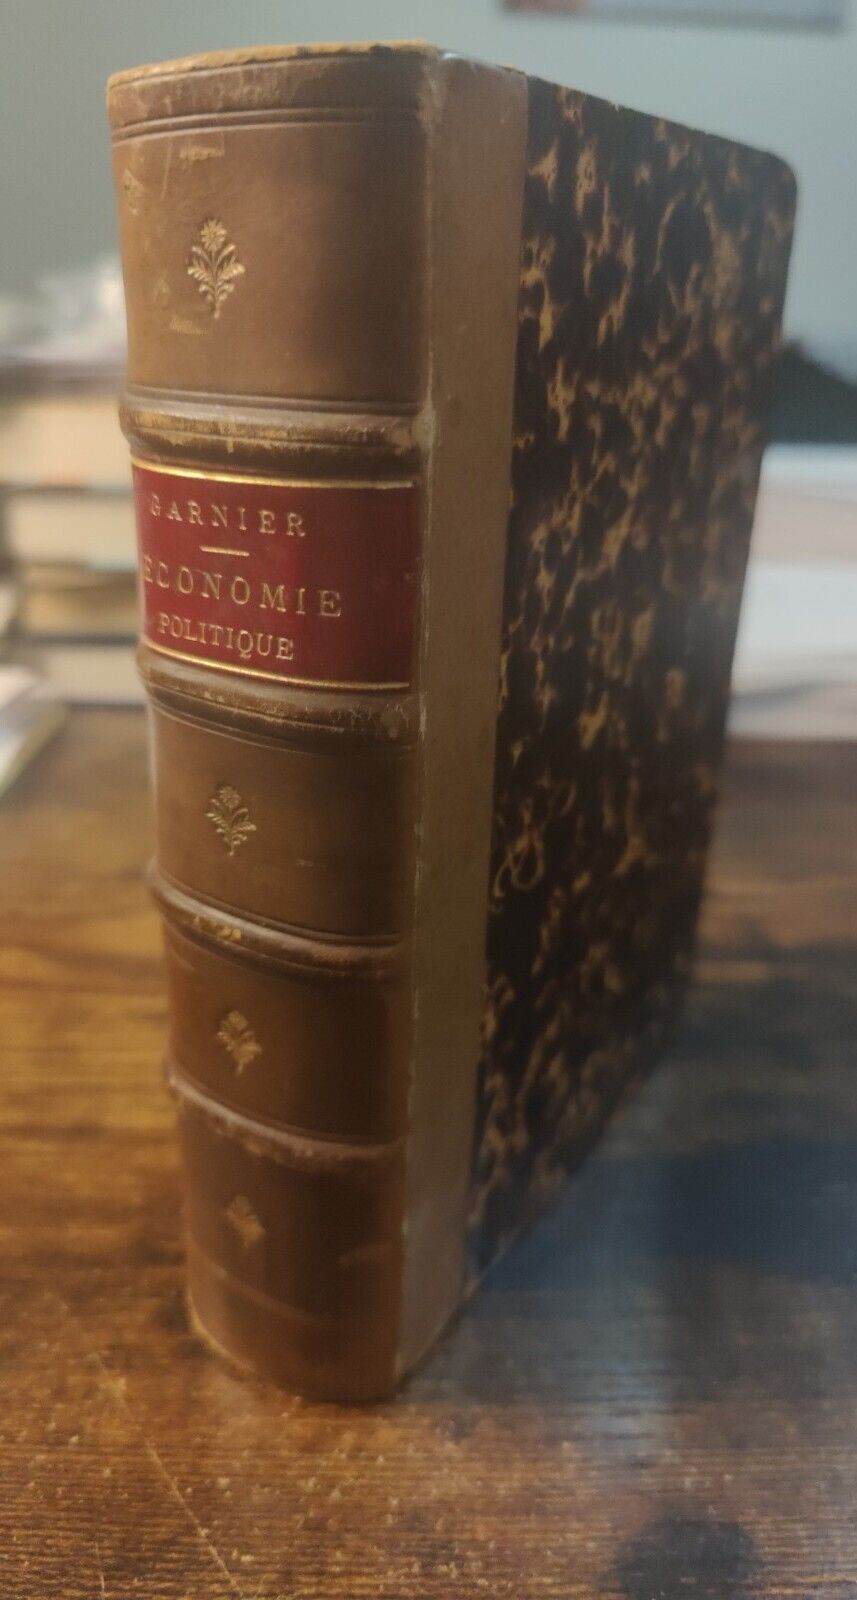 1868 Vintage French Book Traite Economique Sociale Industrielle Joseph Garnier